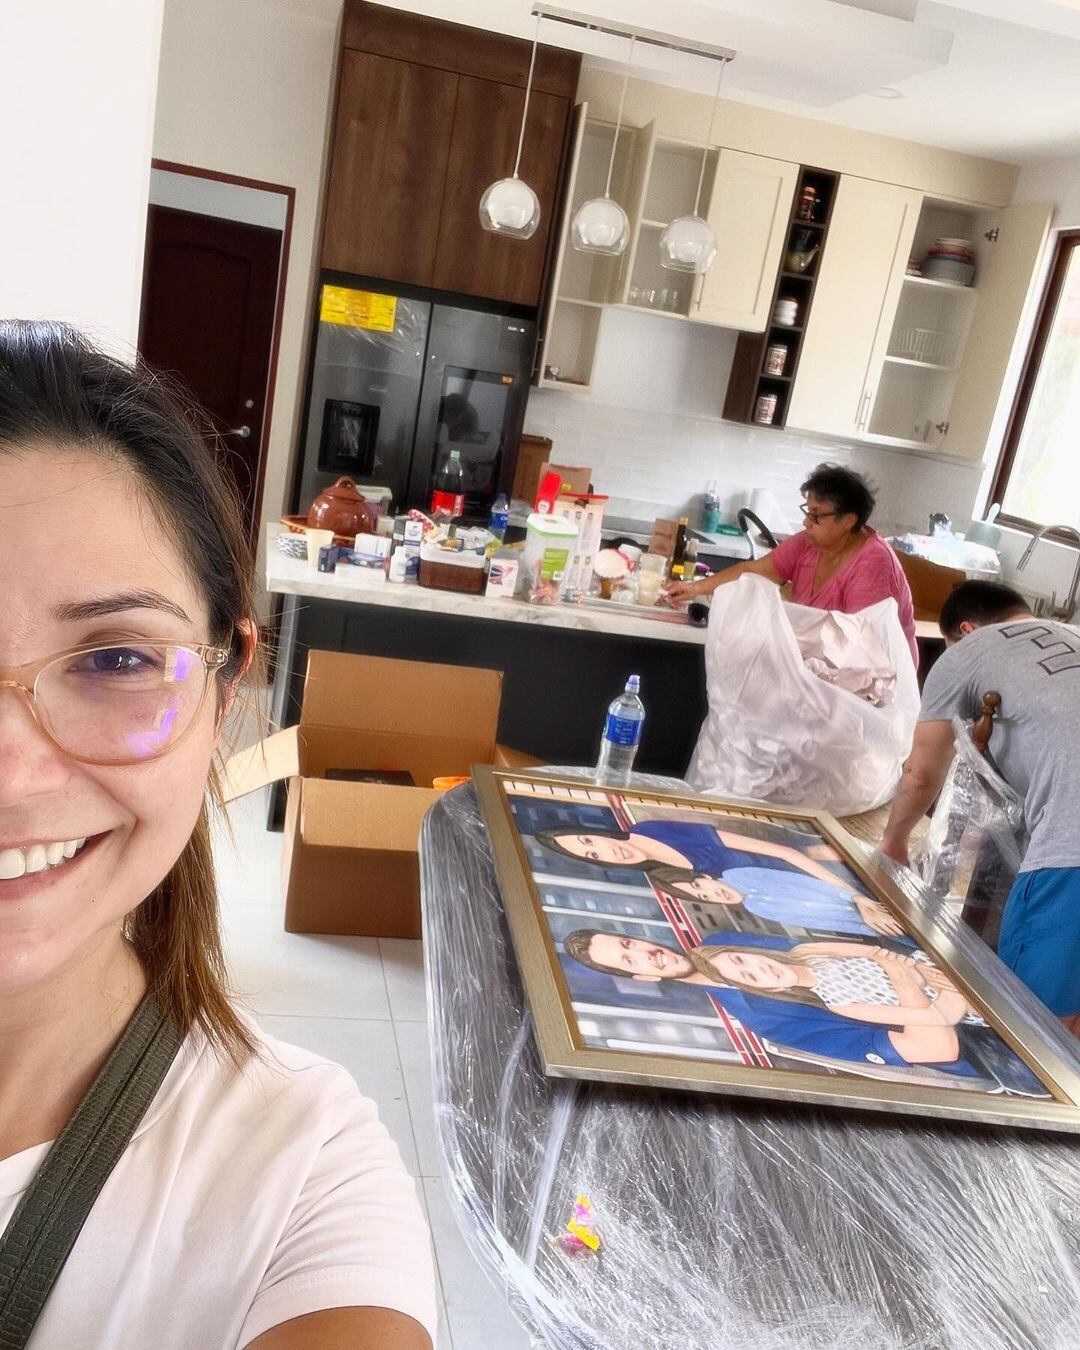 Ginnés Rodríguez recientemente se mudó a su nueva casa, la cual esperó durante 14 años.